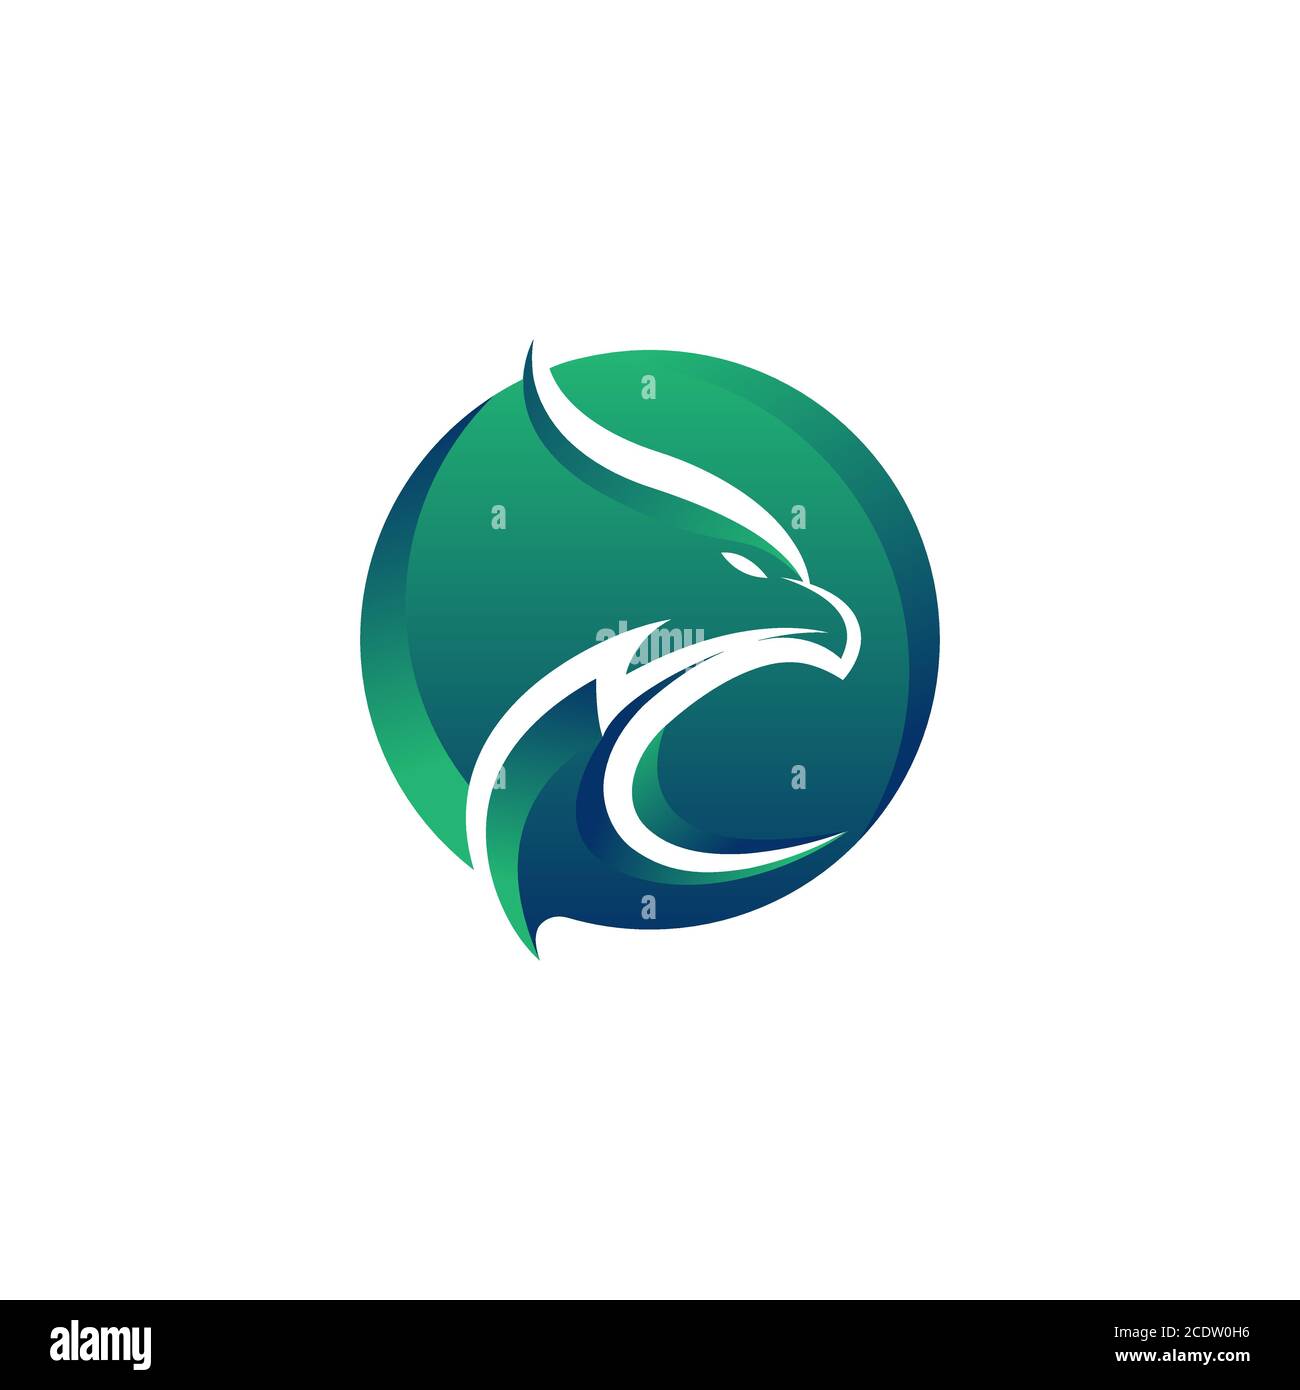 Spazio negativo del modello vettoriale di progettazione del logo Eagle. Creative Wild Bird Falcon Hawk in cerchio logo concetto icona. Illustrazione Vettoriale